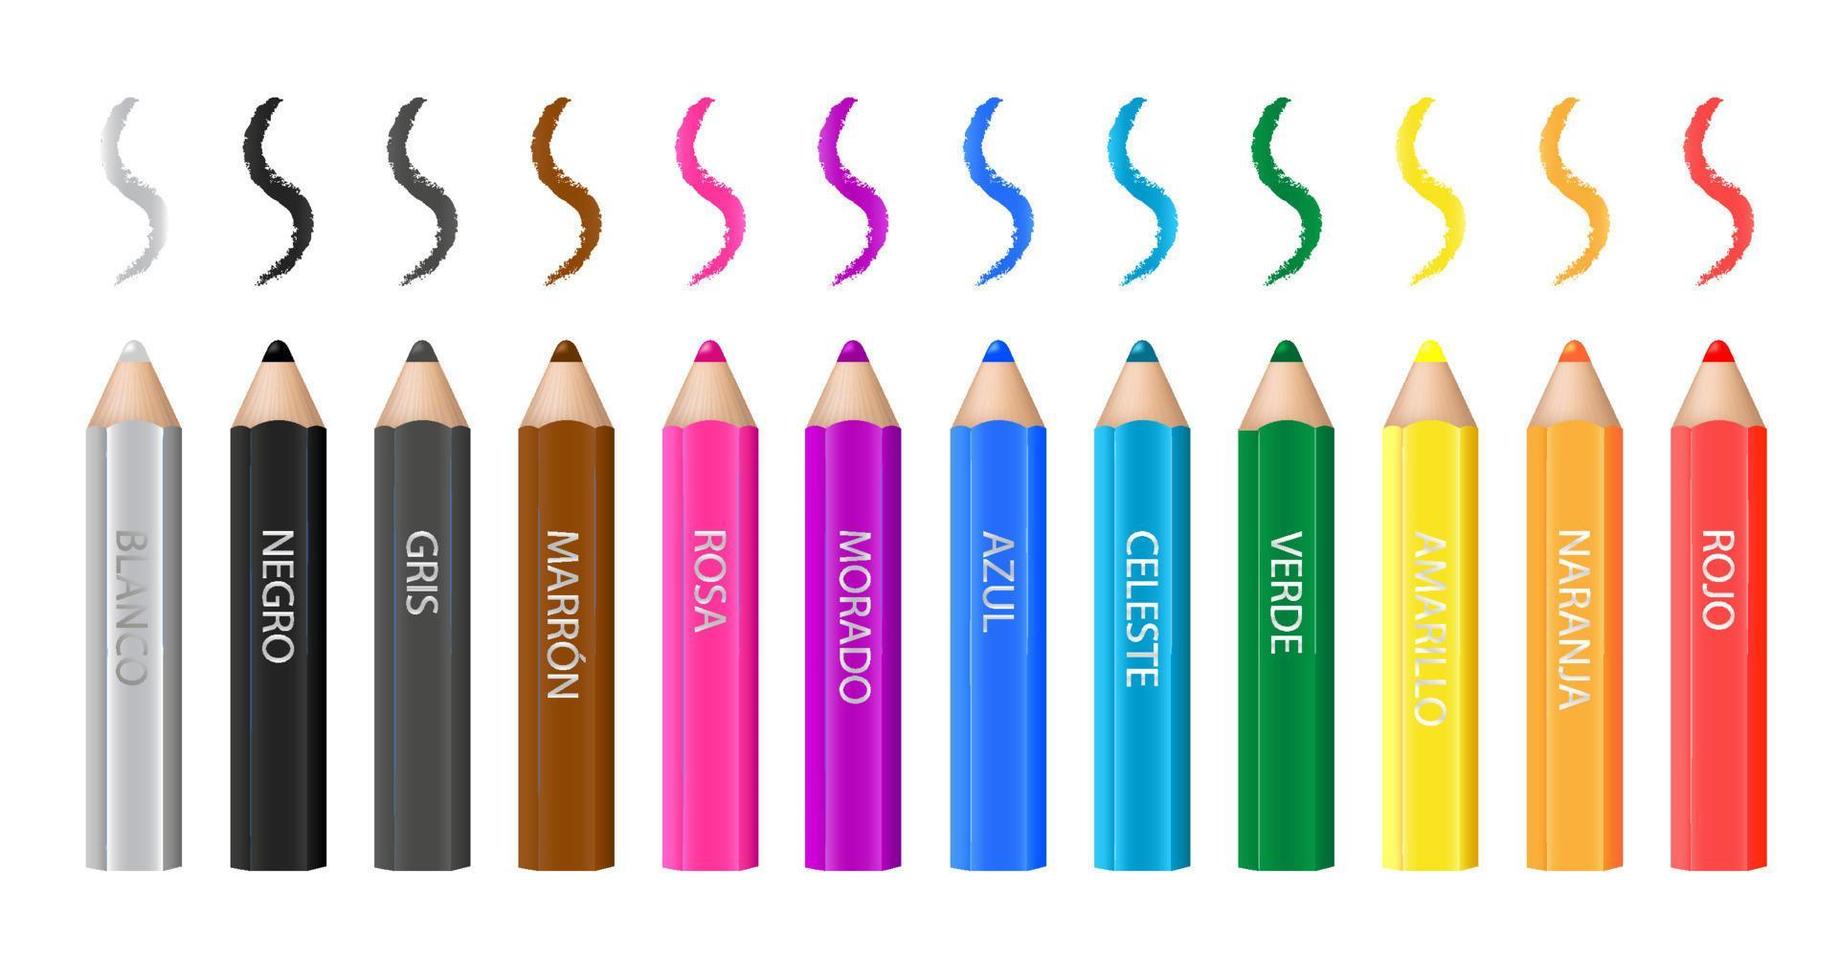 12 lápices y trazos de madera multicolor. Fondo blanco. nombres de colores en español - rojo, naranja, amarillo, verde, celeste, azul, morado, rosa, marron, gris, negro, blanco. diseño vectorial vector